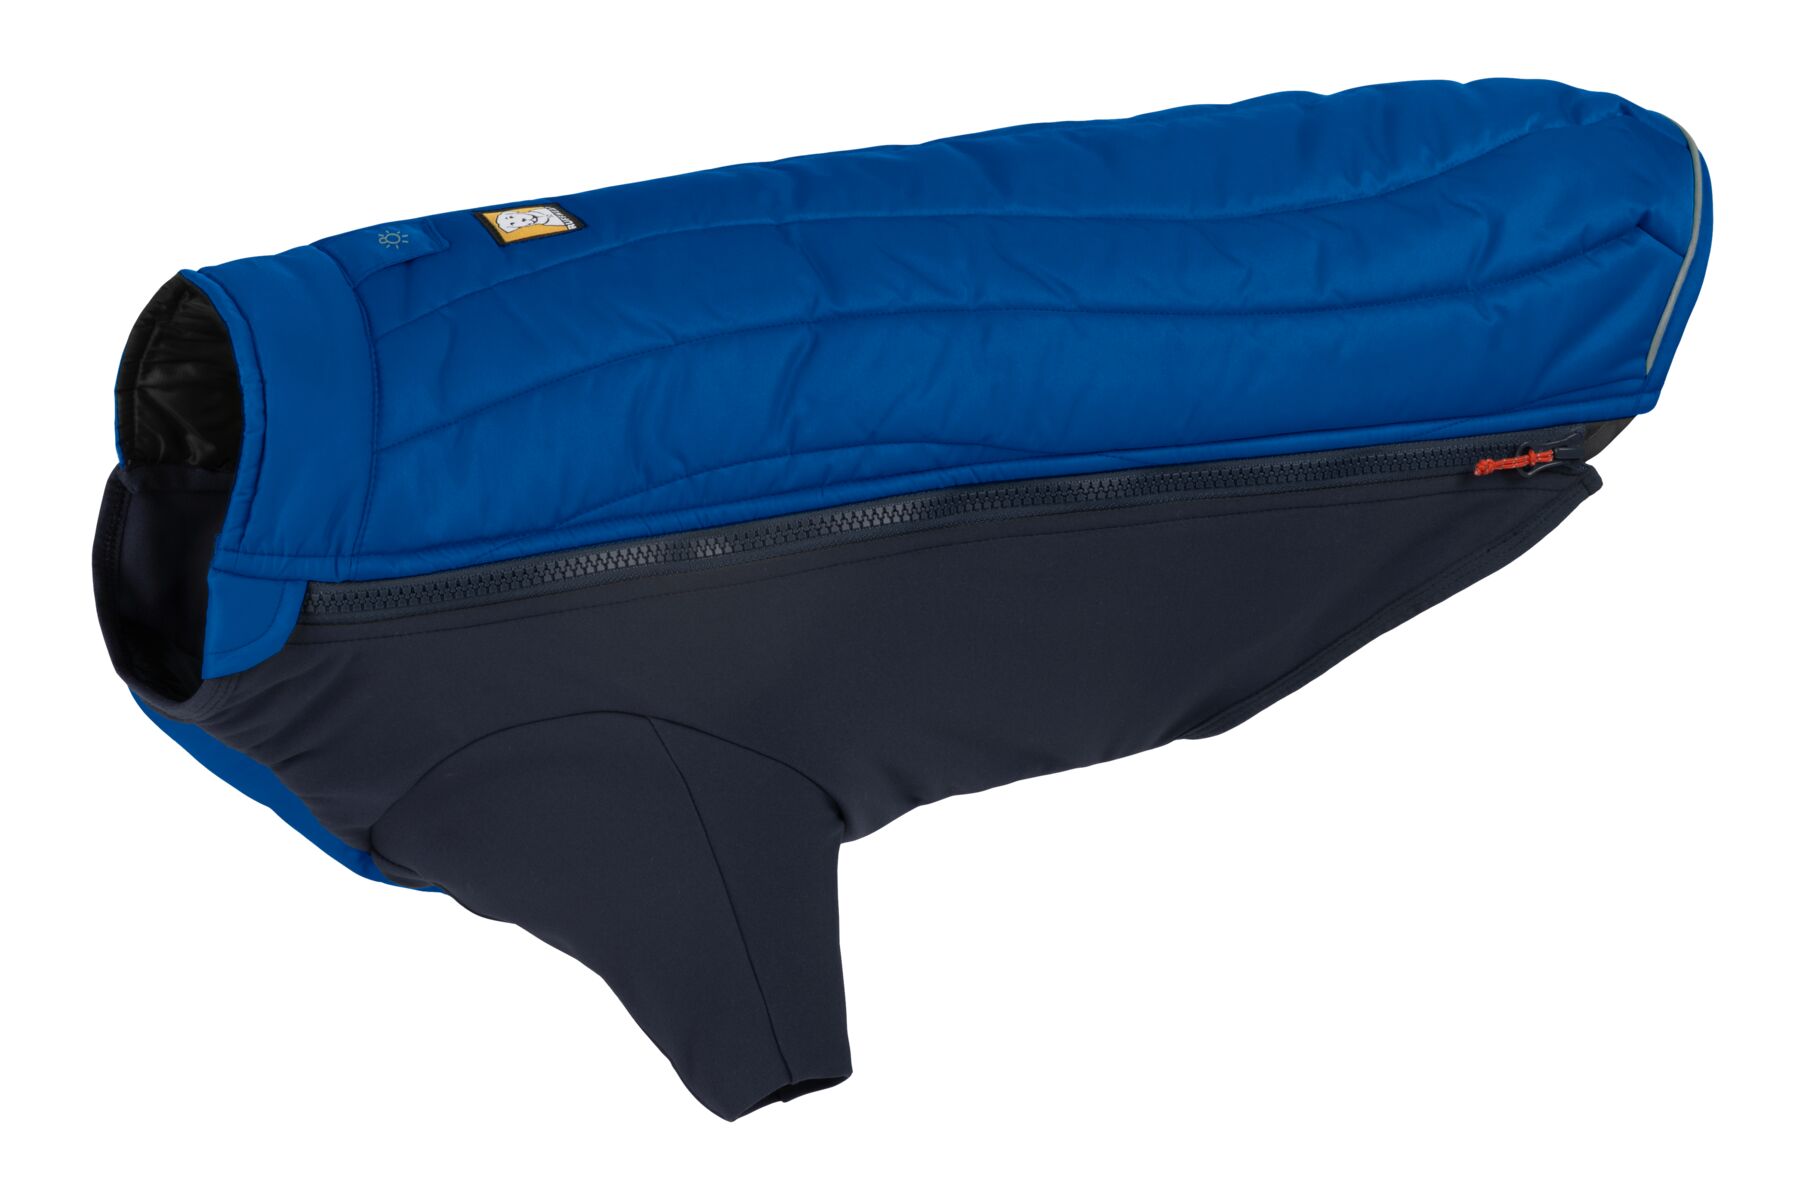 Veste d'hiver powder hound™ avec isolation hybride pour froid extreme. Couleur: blue pool (bleu), taille: xl